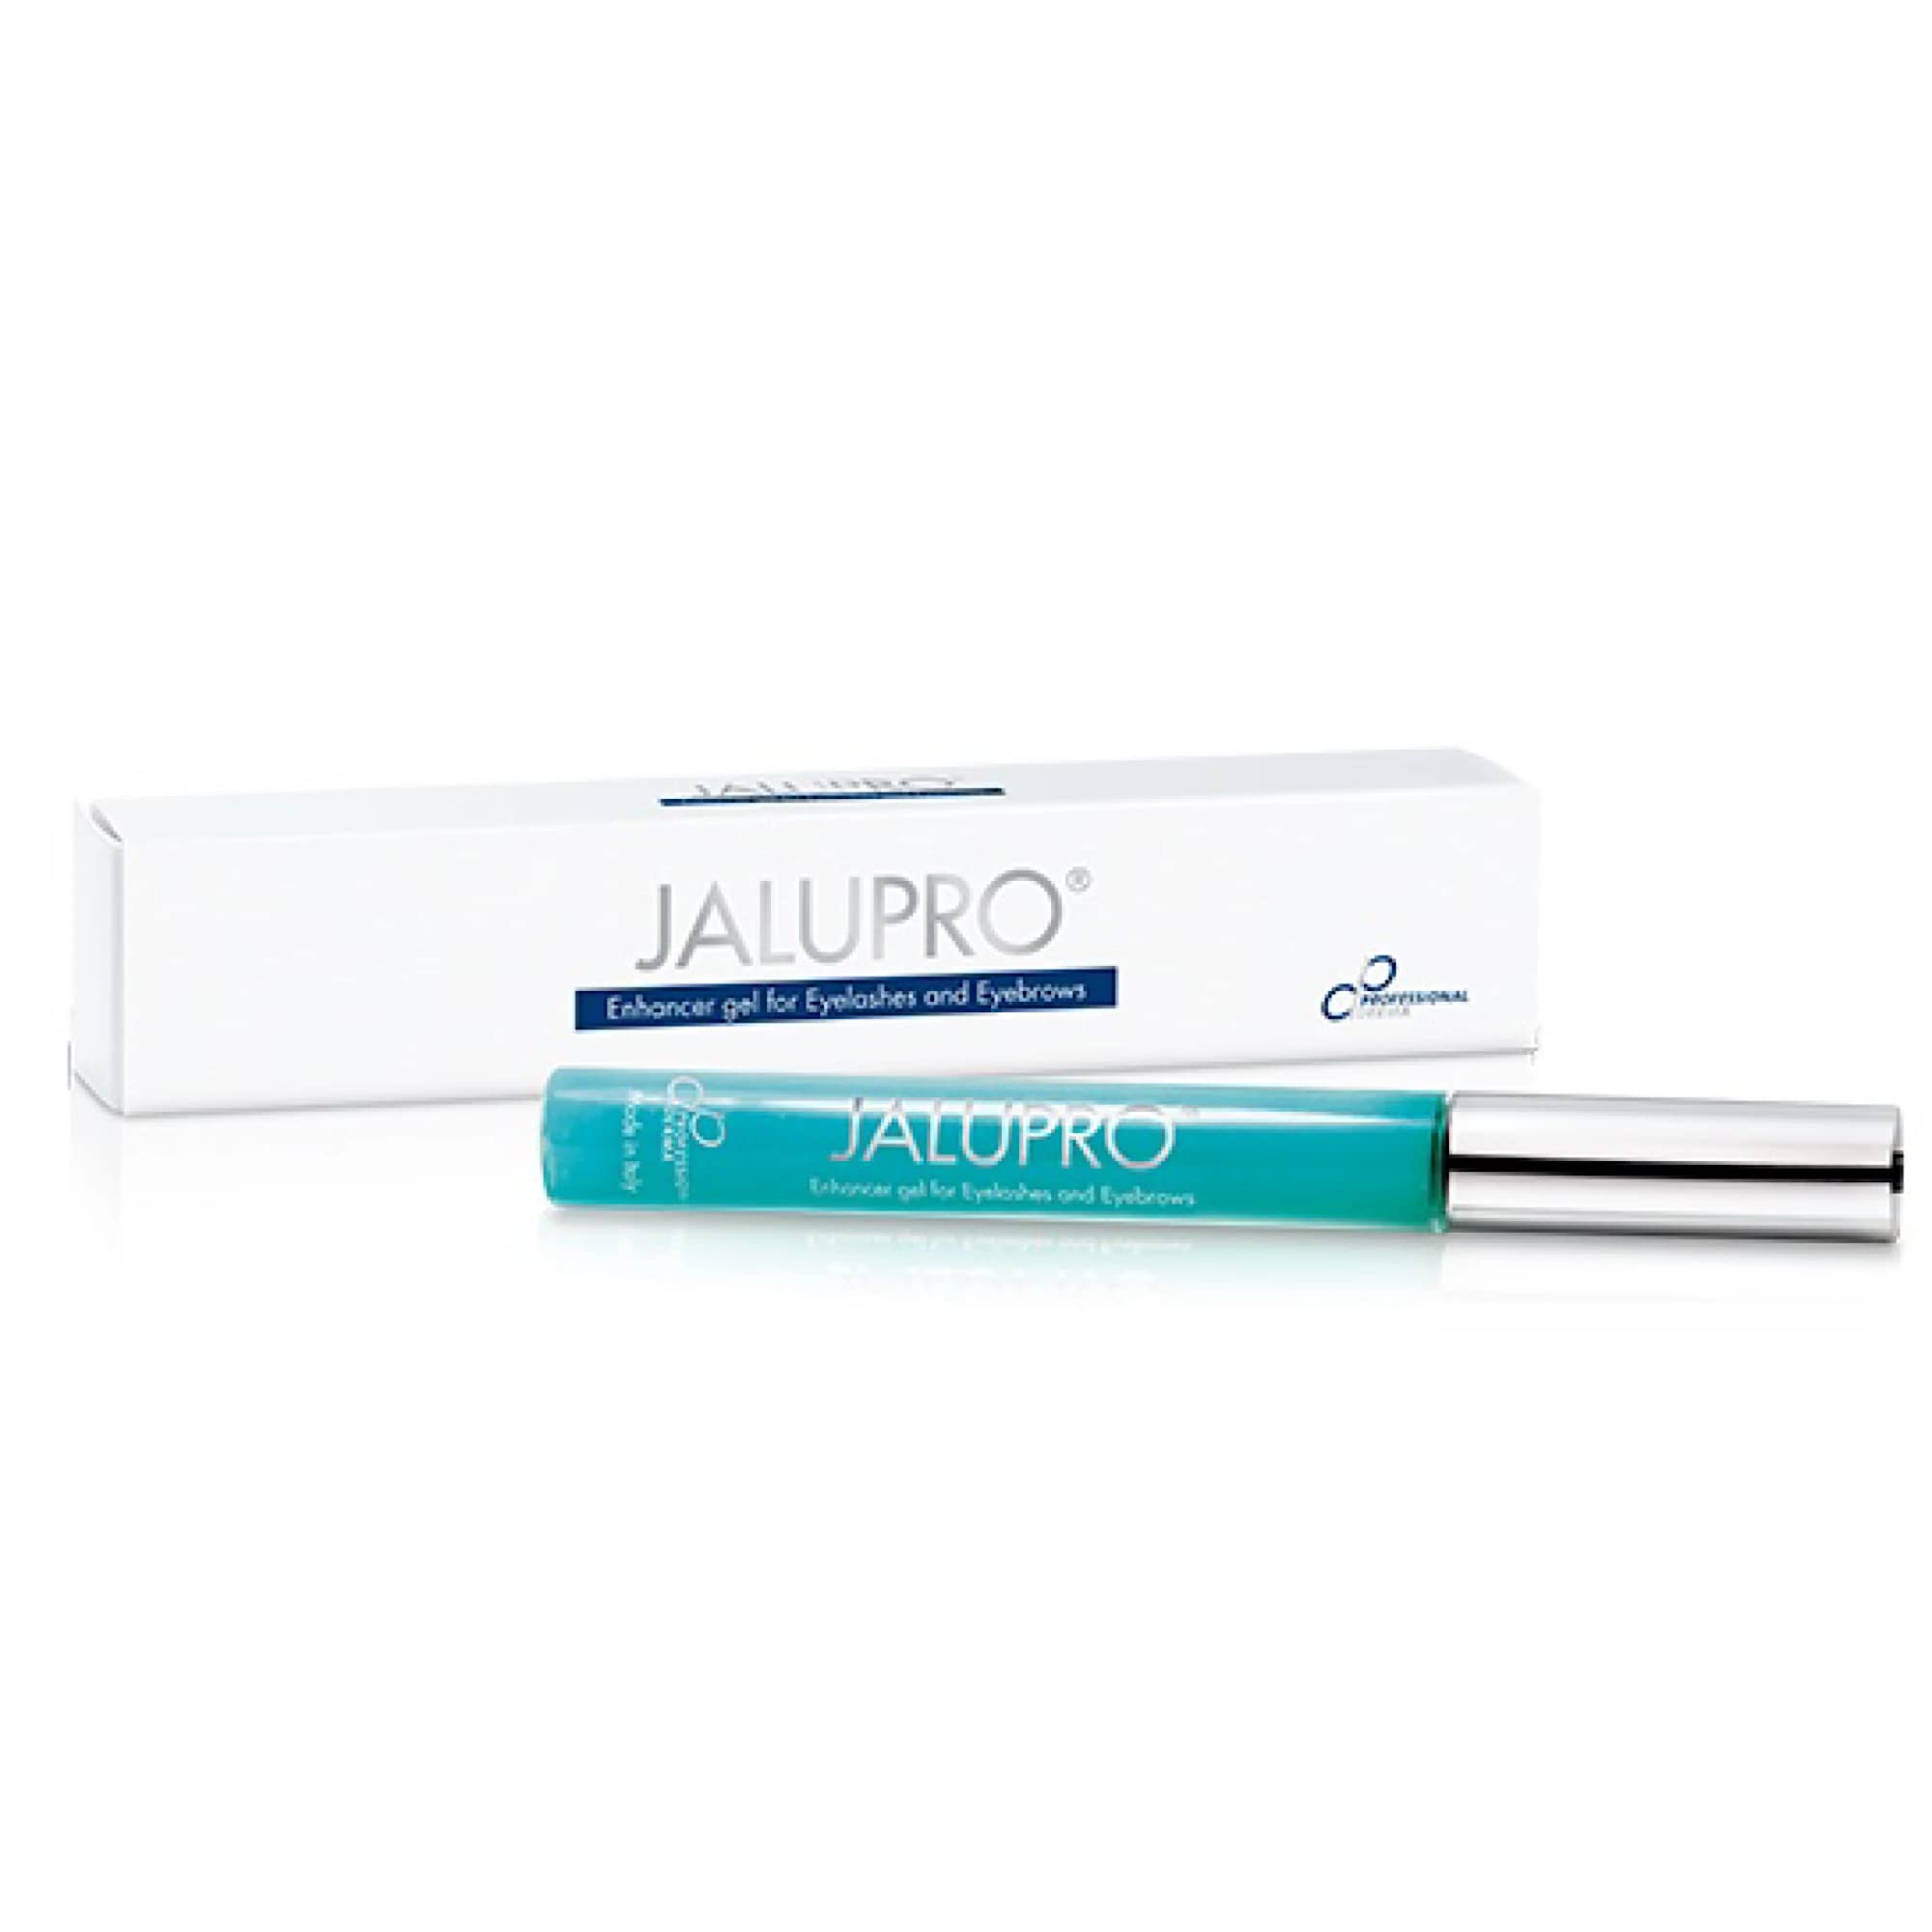 Jalupro - Гель-активатор для роста ресниц и бровей Enhancer Gel For Eyelashes  - Фото 1